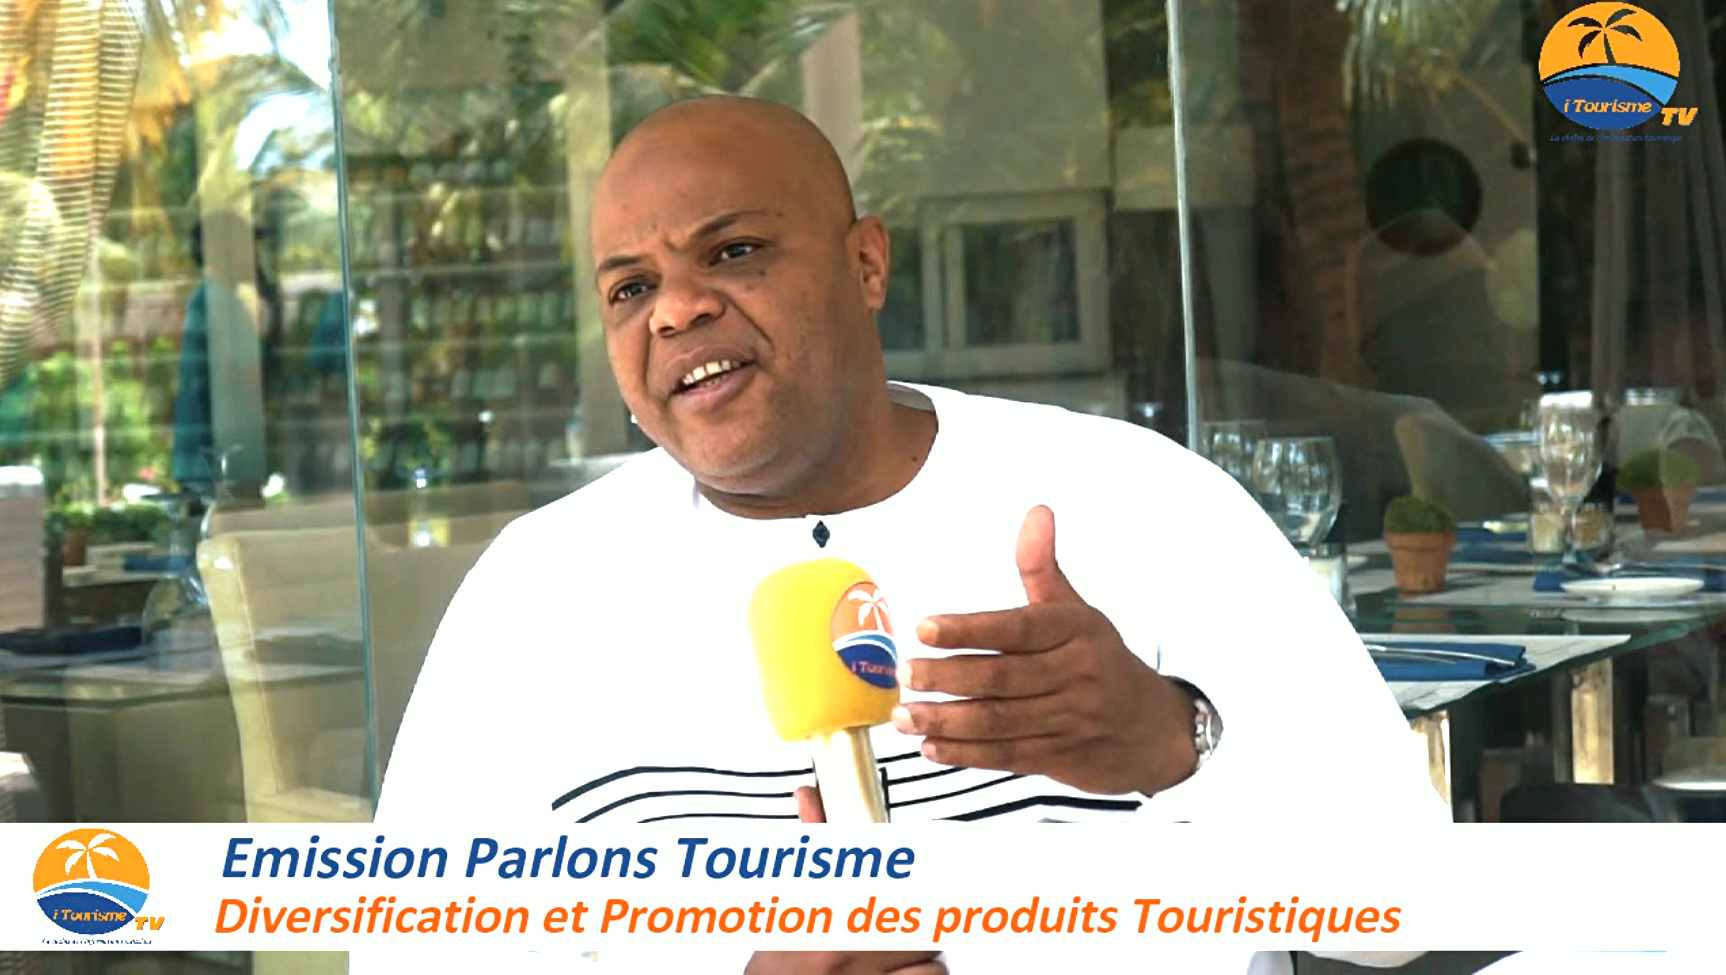 Emission Parlons Tourisme: Diversification et promotion des produits touristiques